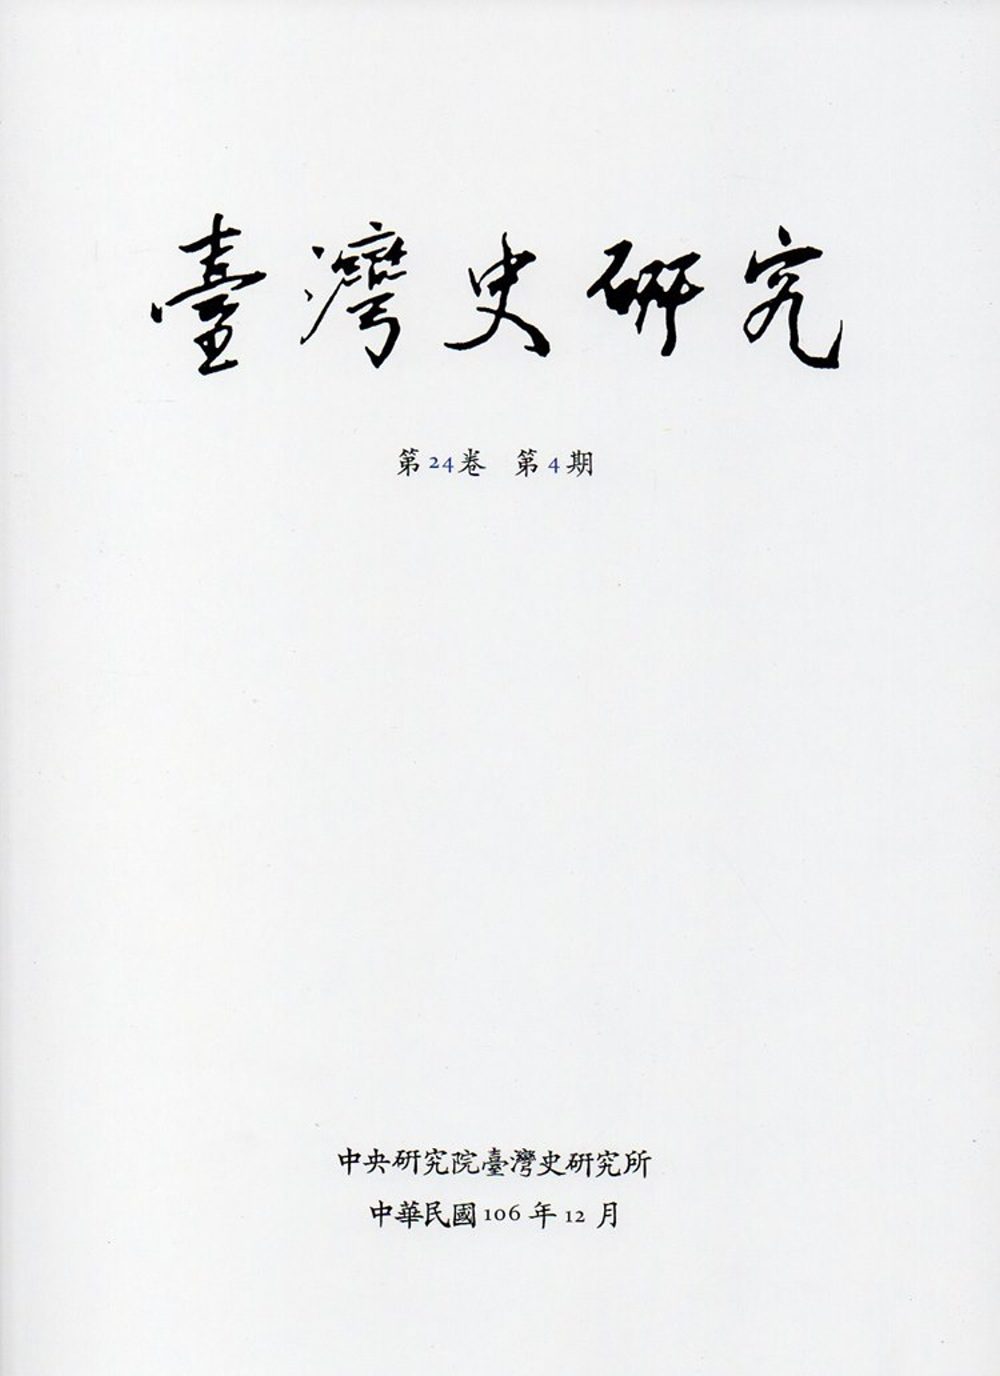 臺灣史研究第24卷4期(106.12)